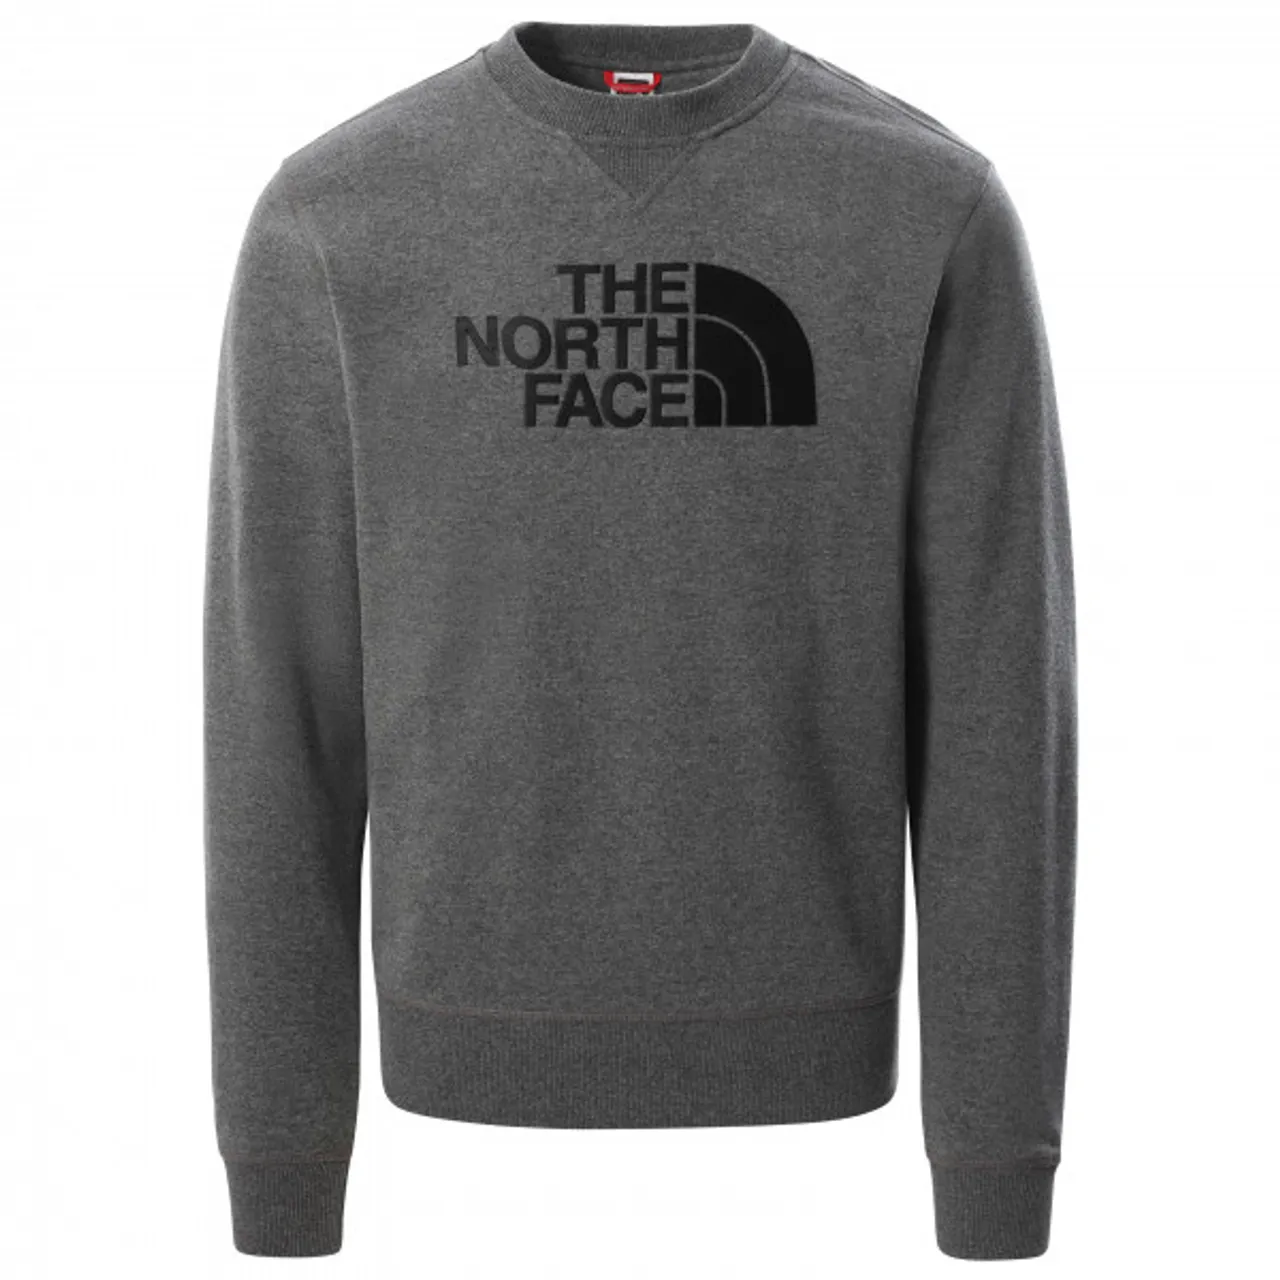 The North Face - Drew Peak Crew Light - Pullover